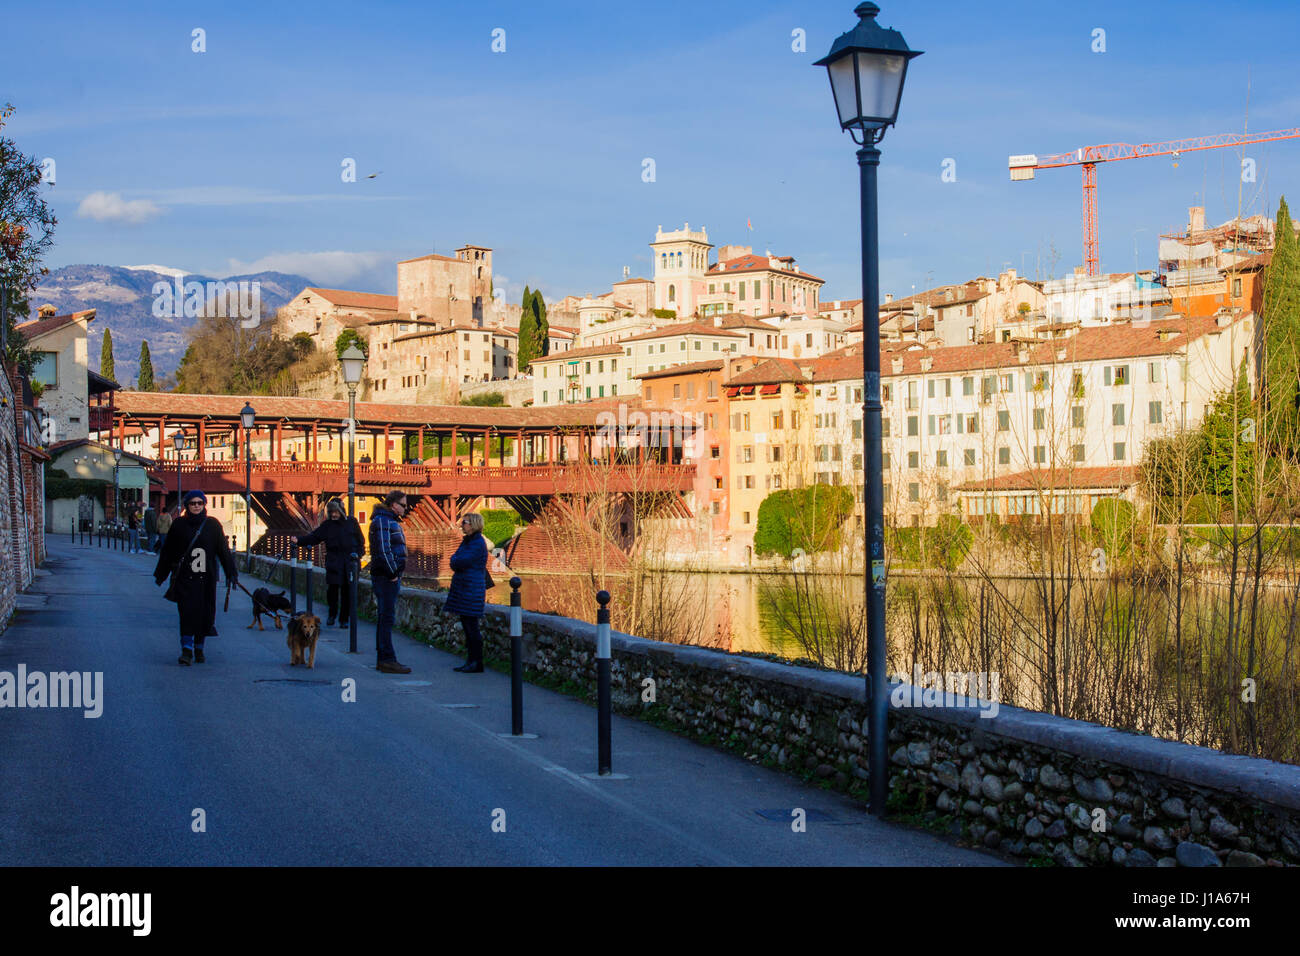 BASSANO Del Grappa, Italia - Jan 31, 2015: la escena del Ponte Vecchio (o el Ponte degli Alpini) Bridge, con locales y turistas, y el río Brenta, en Foto de stock